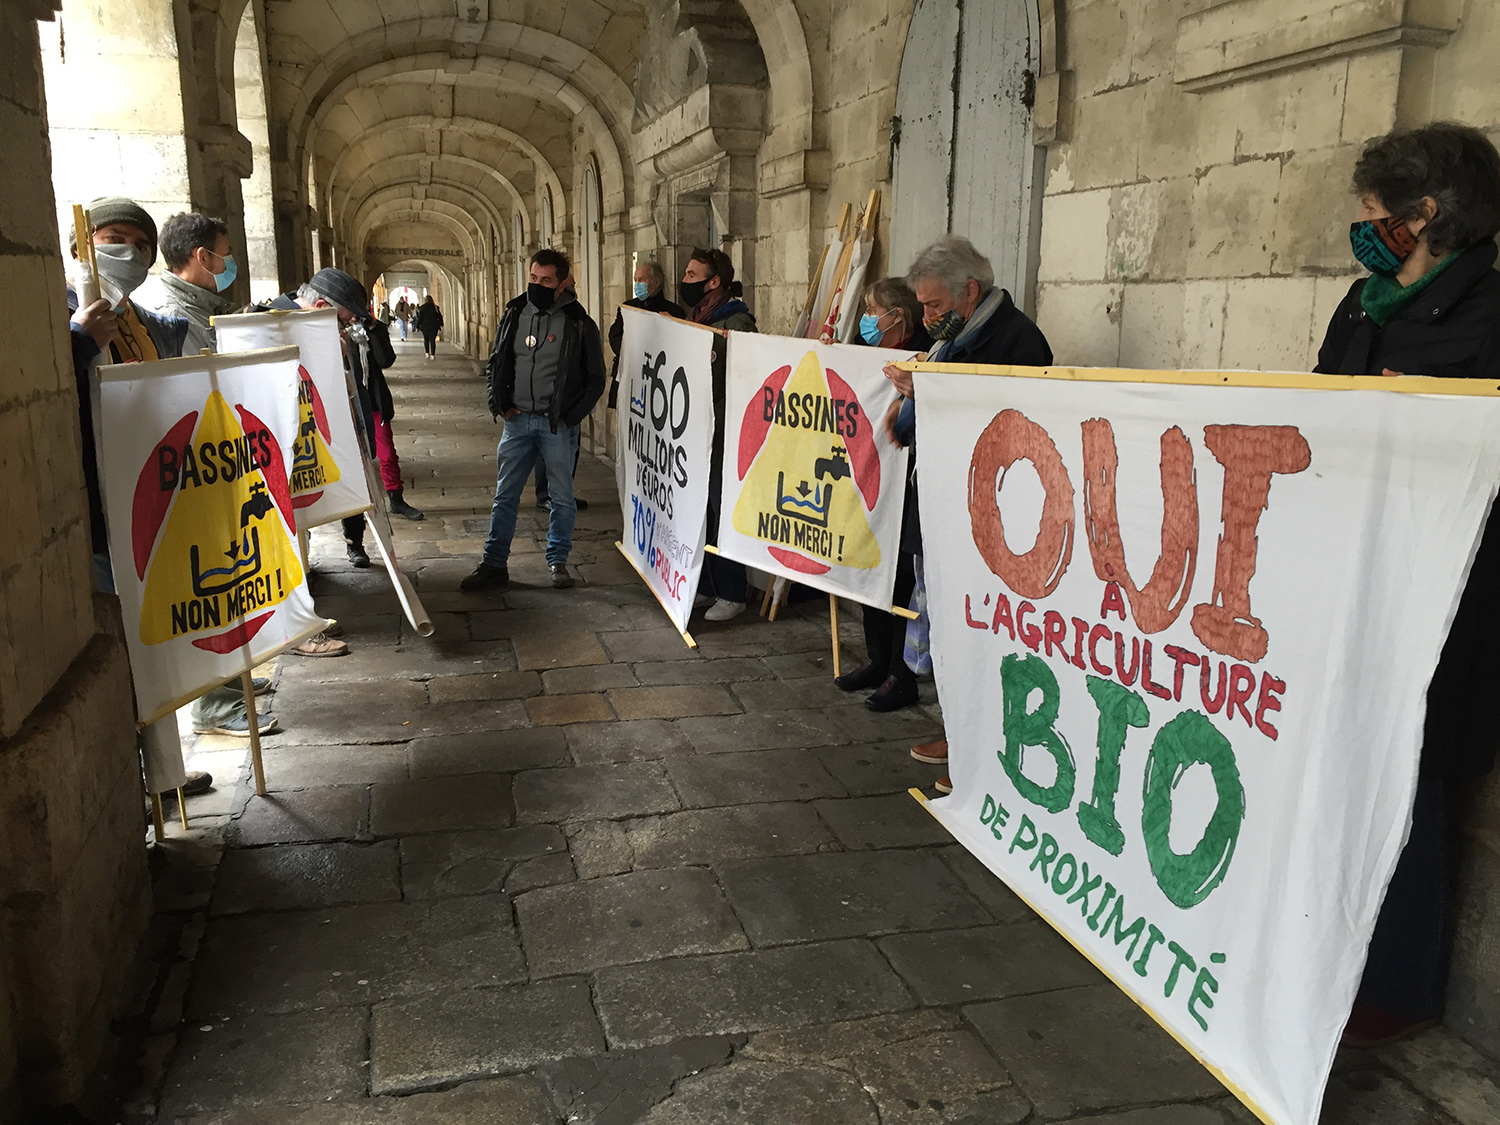 Les militants anti-bassines devant le tribunal judiciaire de La Rochelle. (©Y. Picard)